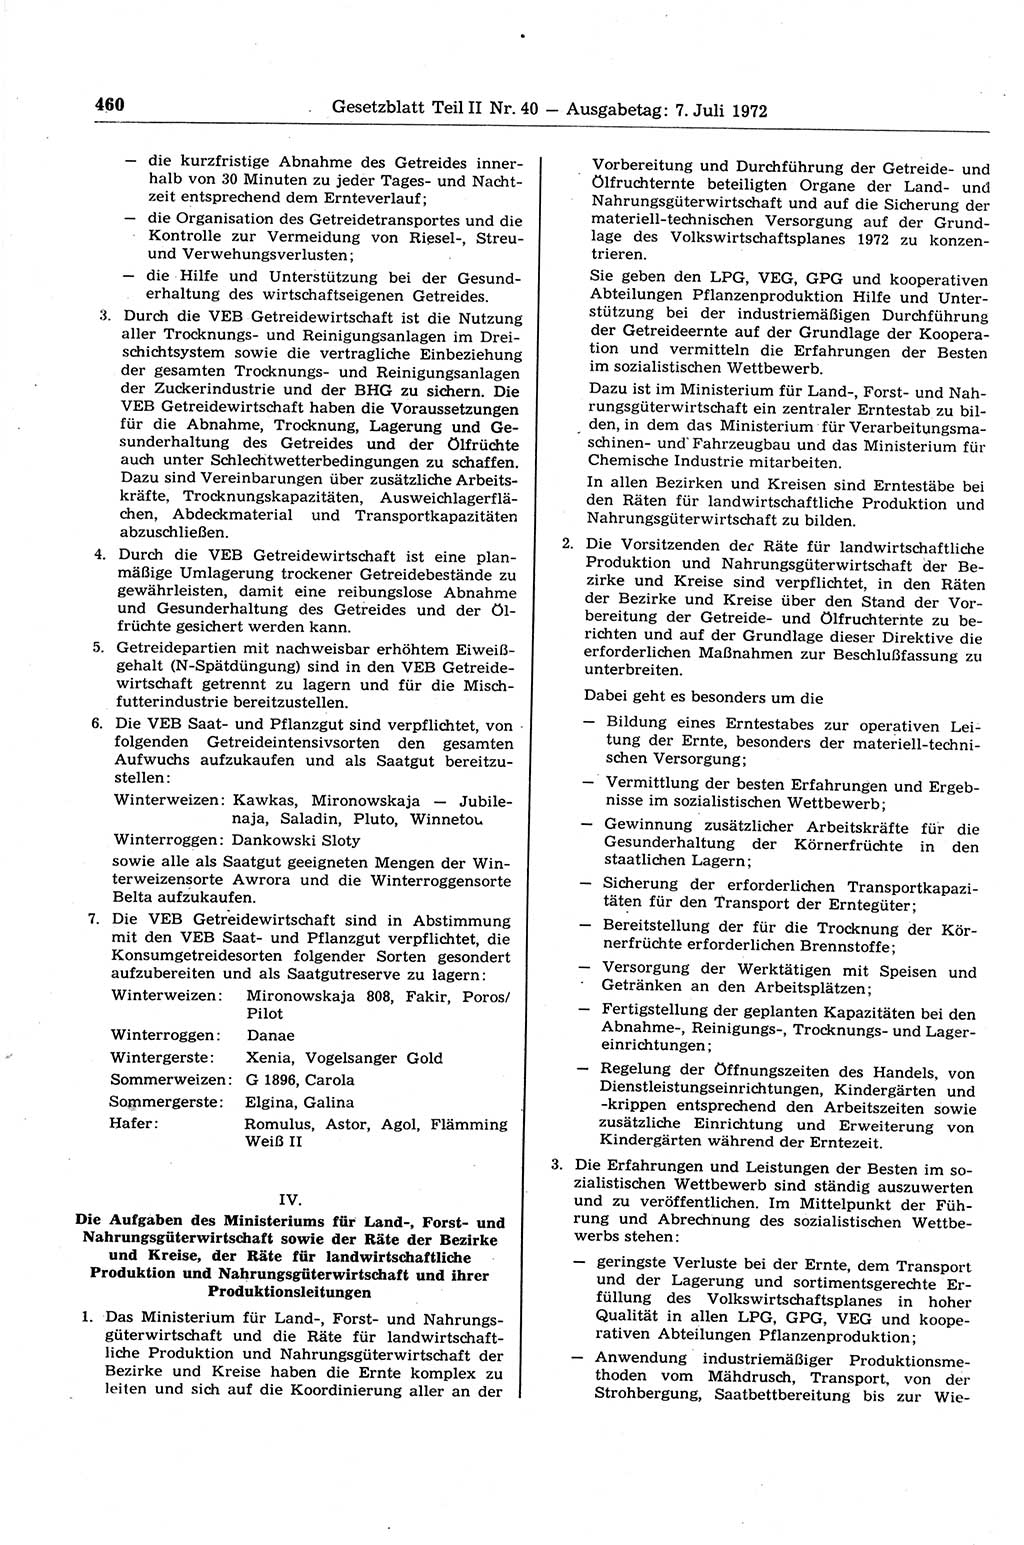 Gesetzblatt (GBl.) der Deutschen Demokratischen Republik (DDR) Teil ⅠⅠ 1972, Seite 460 (GBl. DDR ⅠⅠ 1972, S. 460)